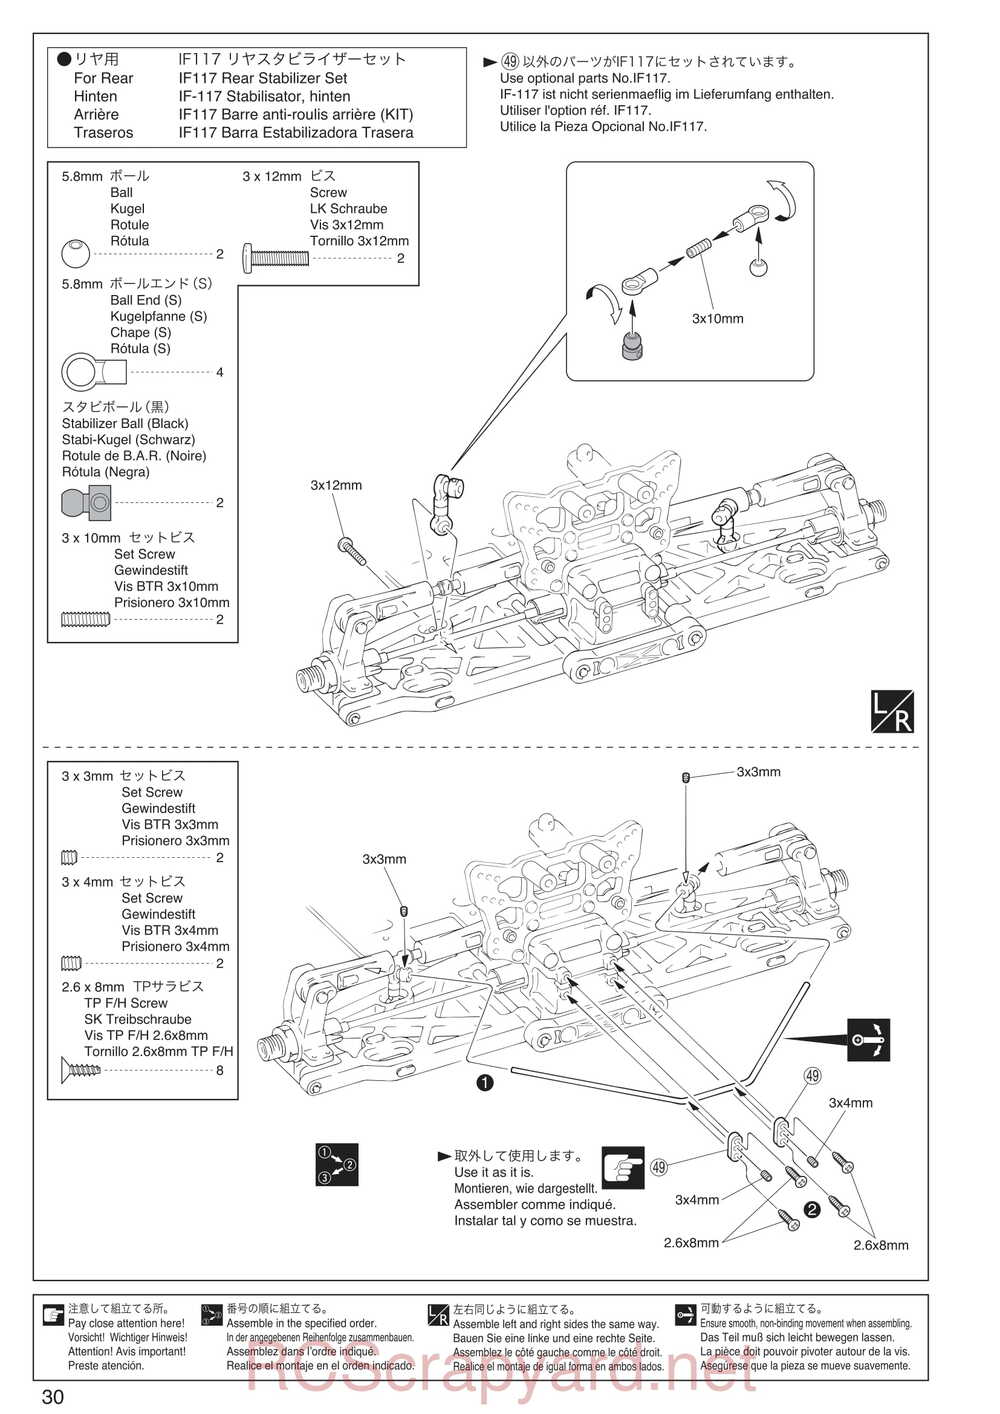 Kyosho - 30935 - Inferno GT2 VE Race-Spec - Manual - Page 30